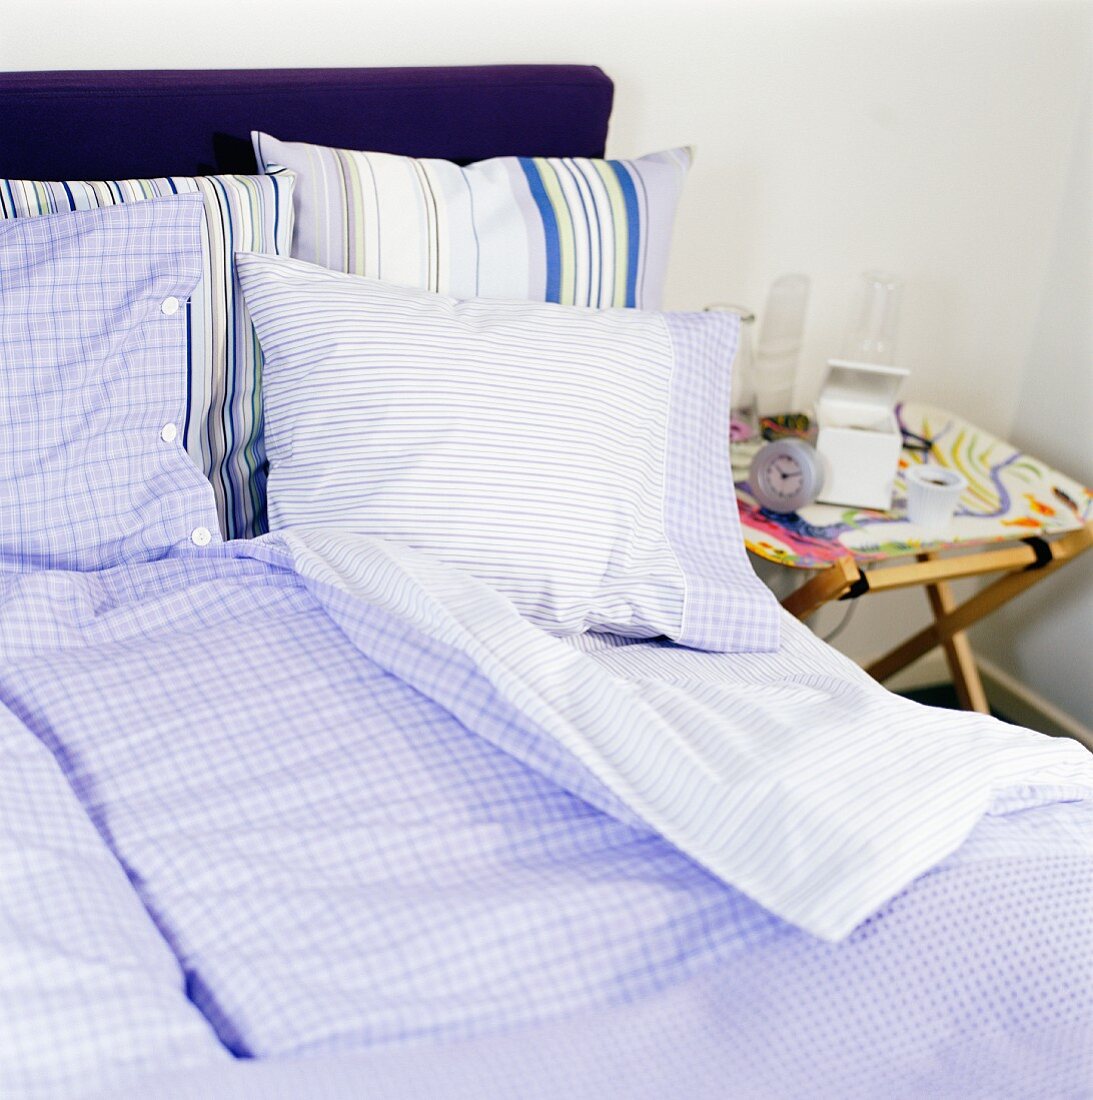 Bett mit blau-weiss gemusterter Bettwäsche